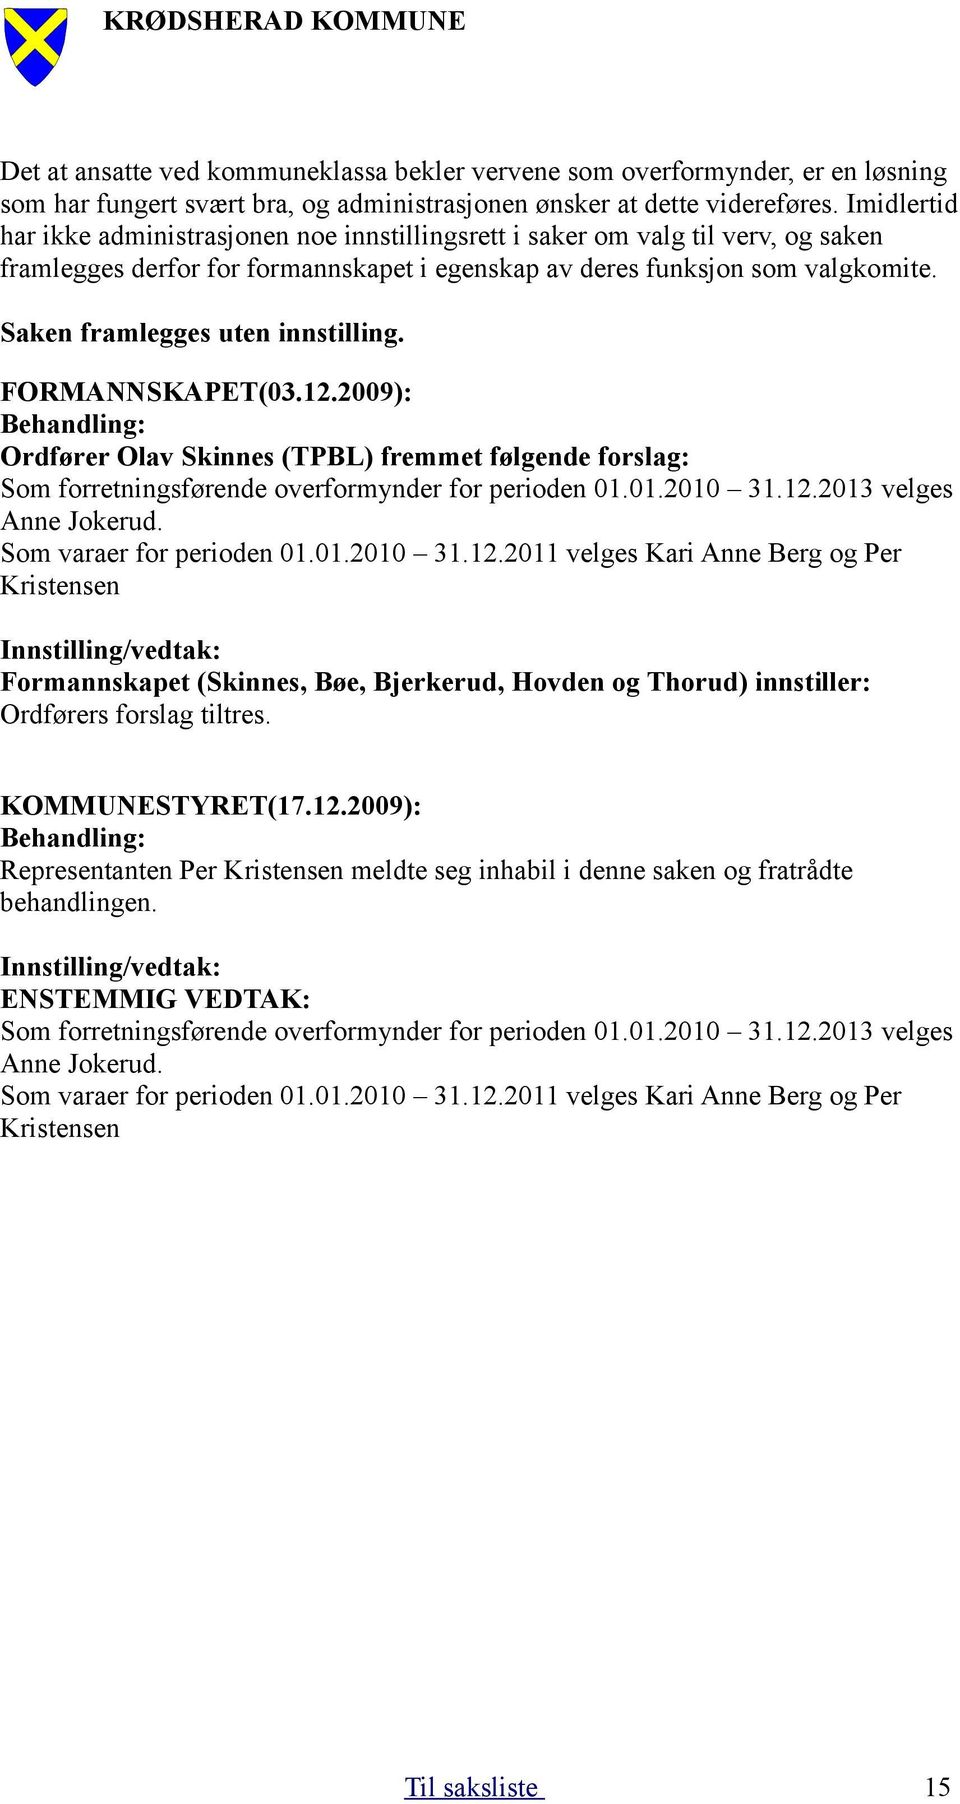 Saken framlegges uten innstilling. FORMANNSKAPET(03.12.2009): Ordfører Olav Skinnes (TPBL) fremmet følgende forslag: Som forretningsførende overformynder for perioden 01.01.2010 31.12.2013 velges Anne Jokerud.